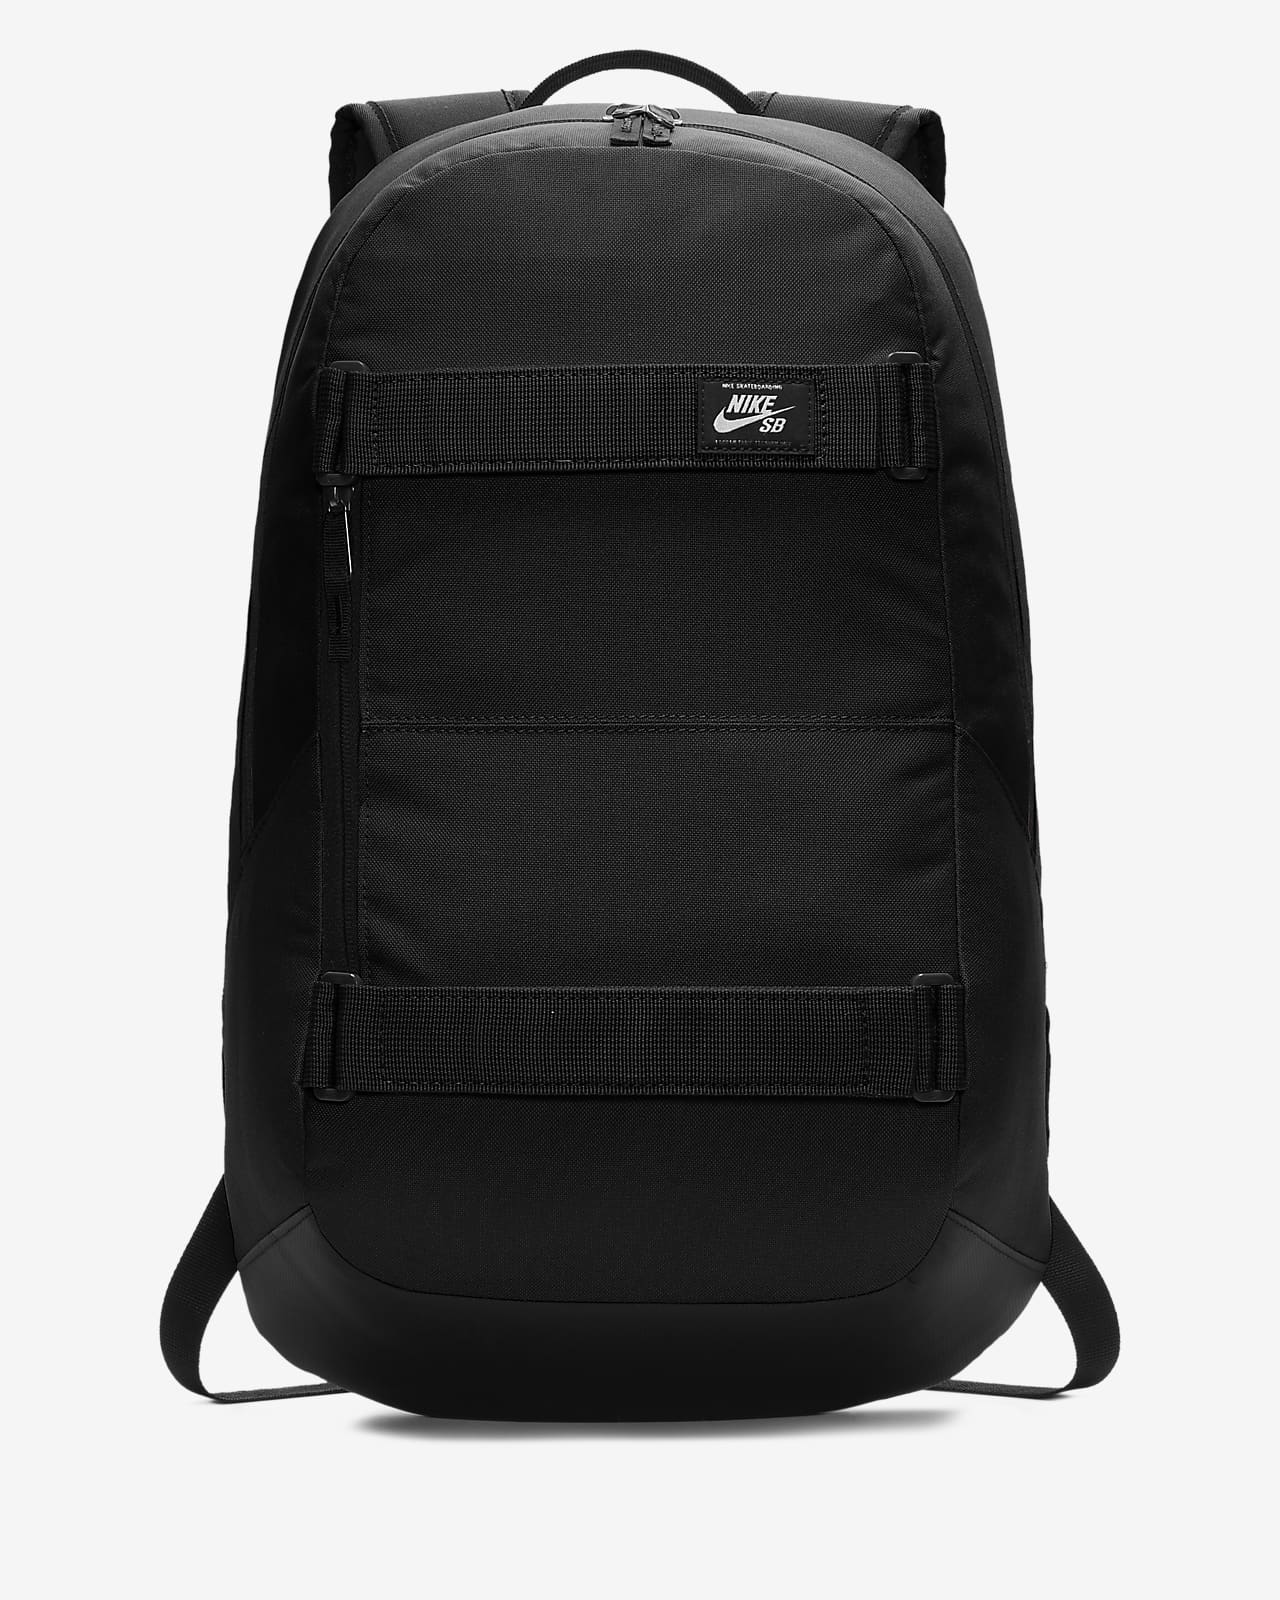 rpm backpack nike